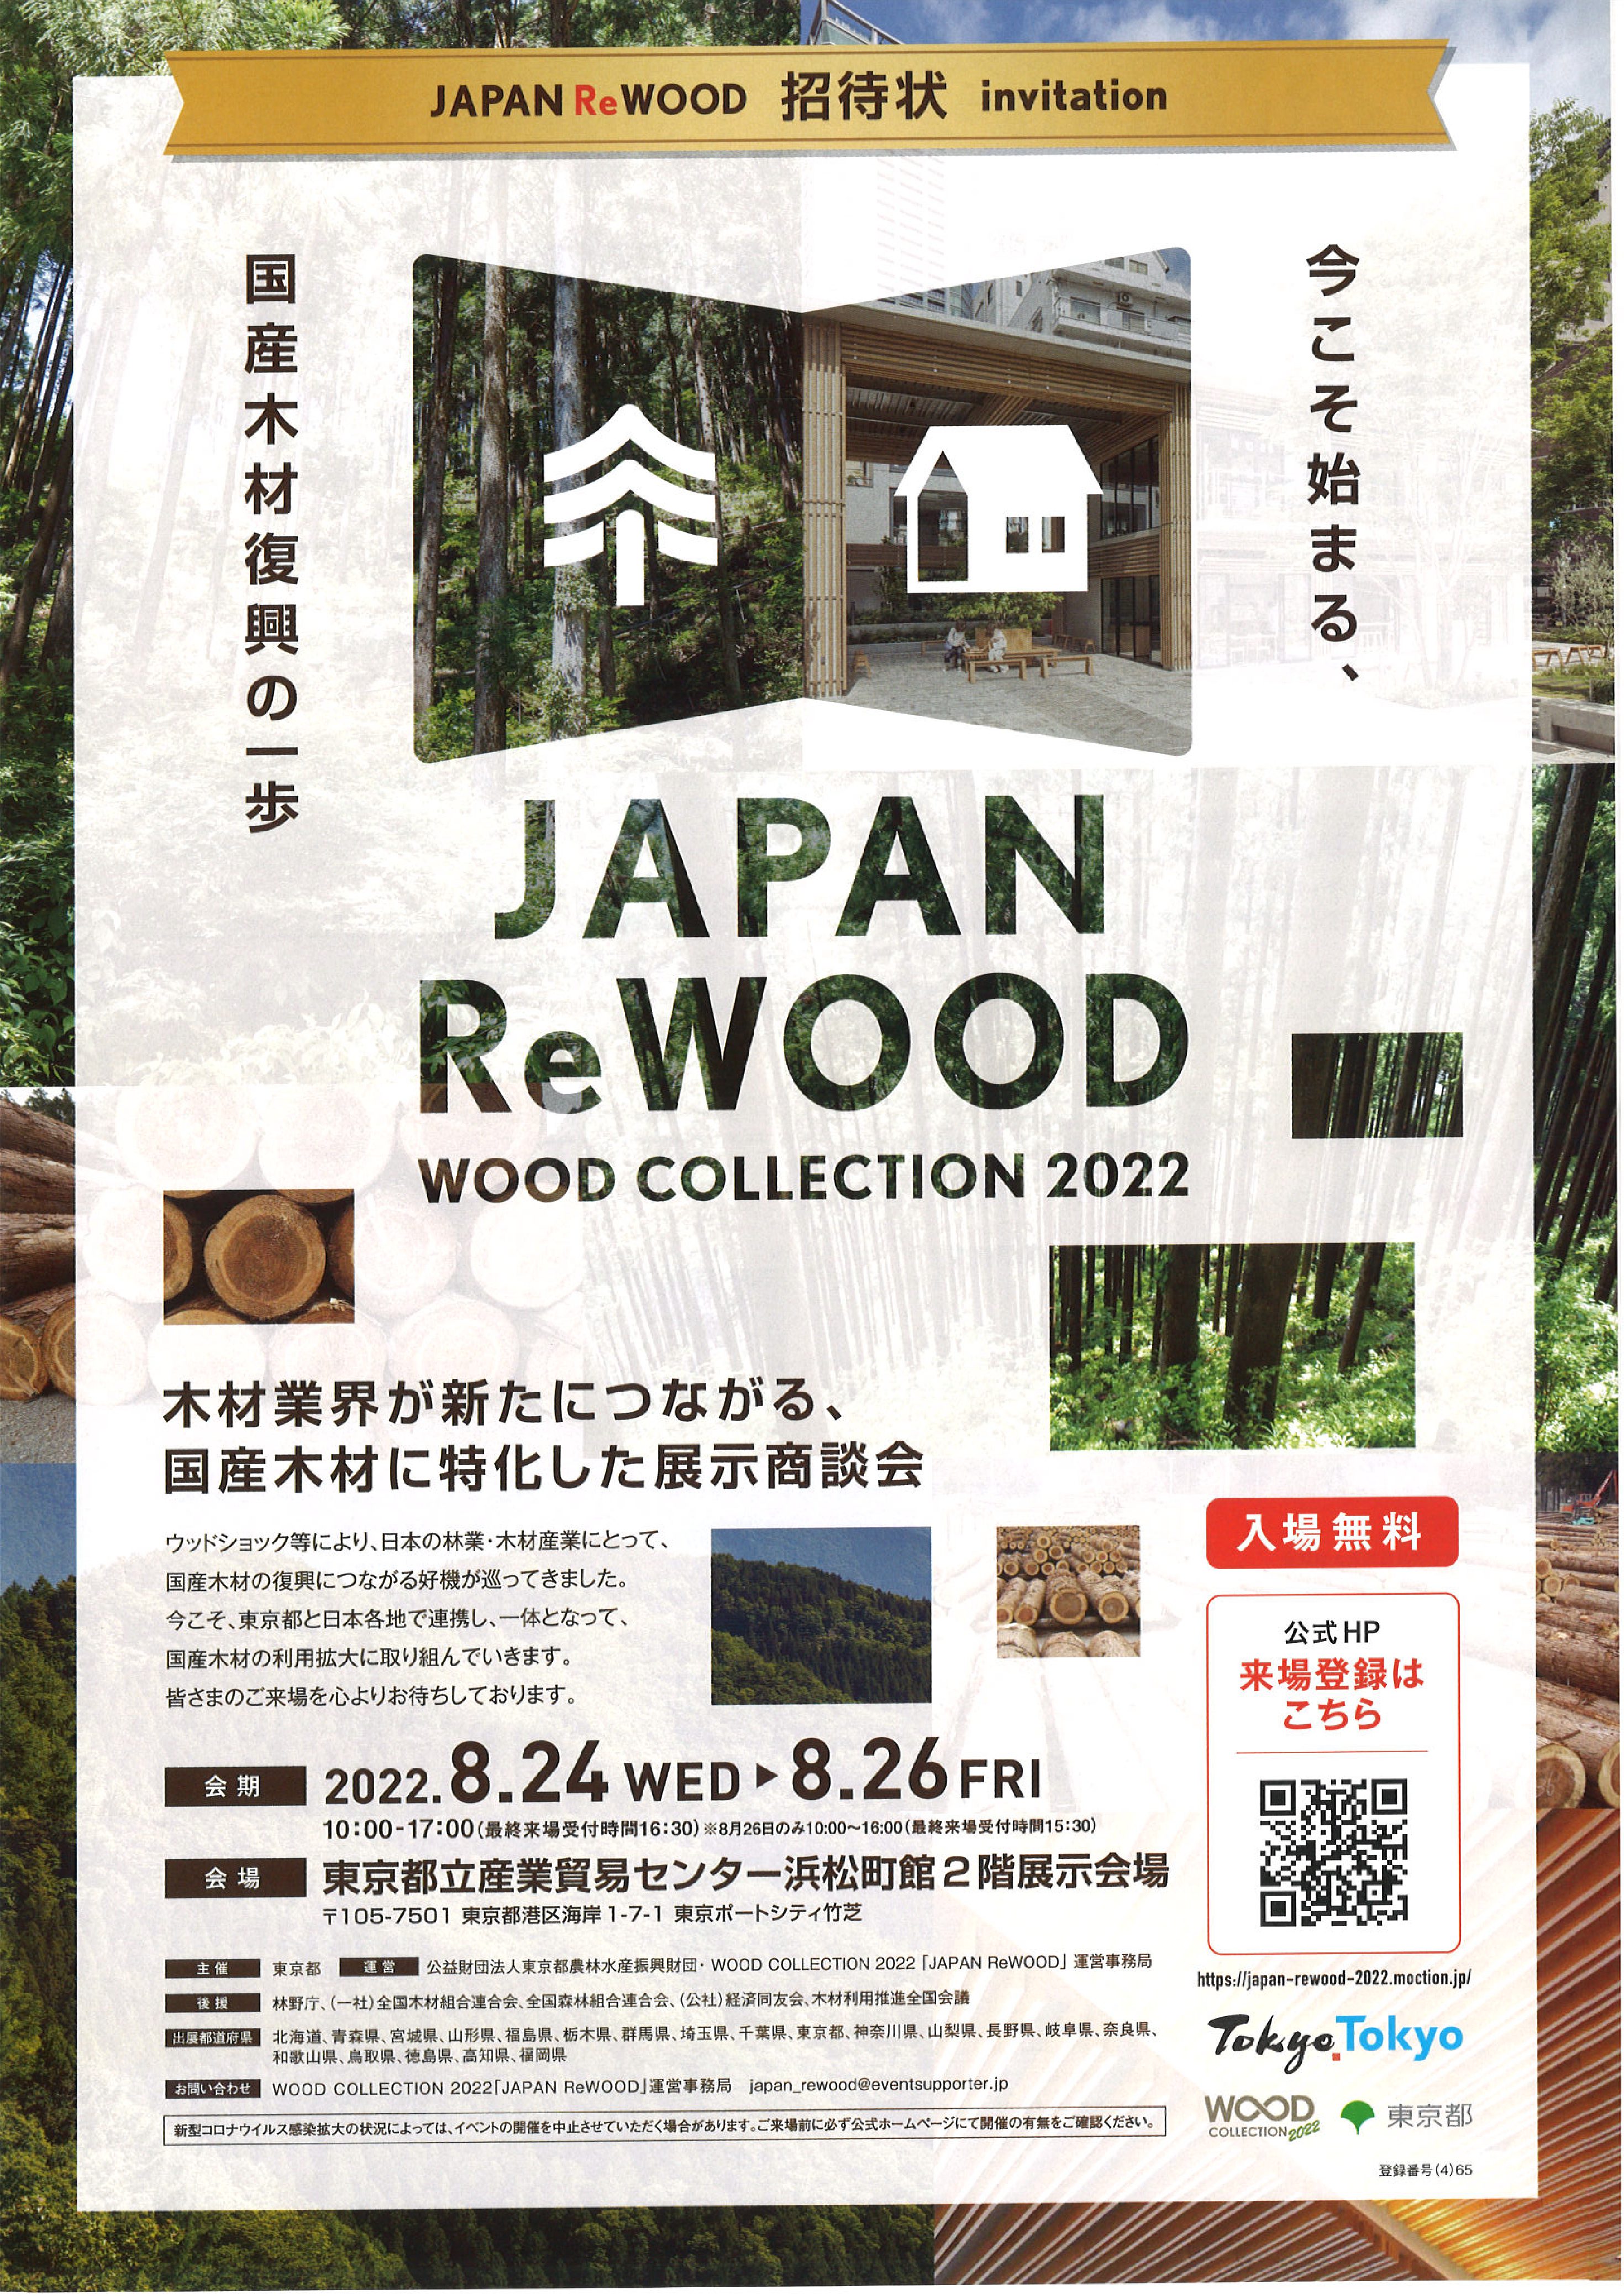 JAPAN RwWOOD WODD COLLECCTION 2022